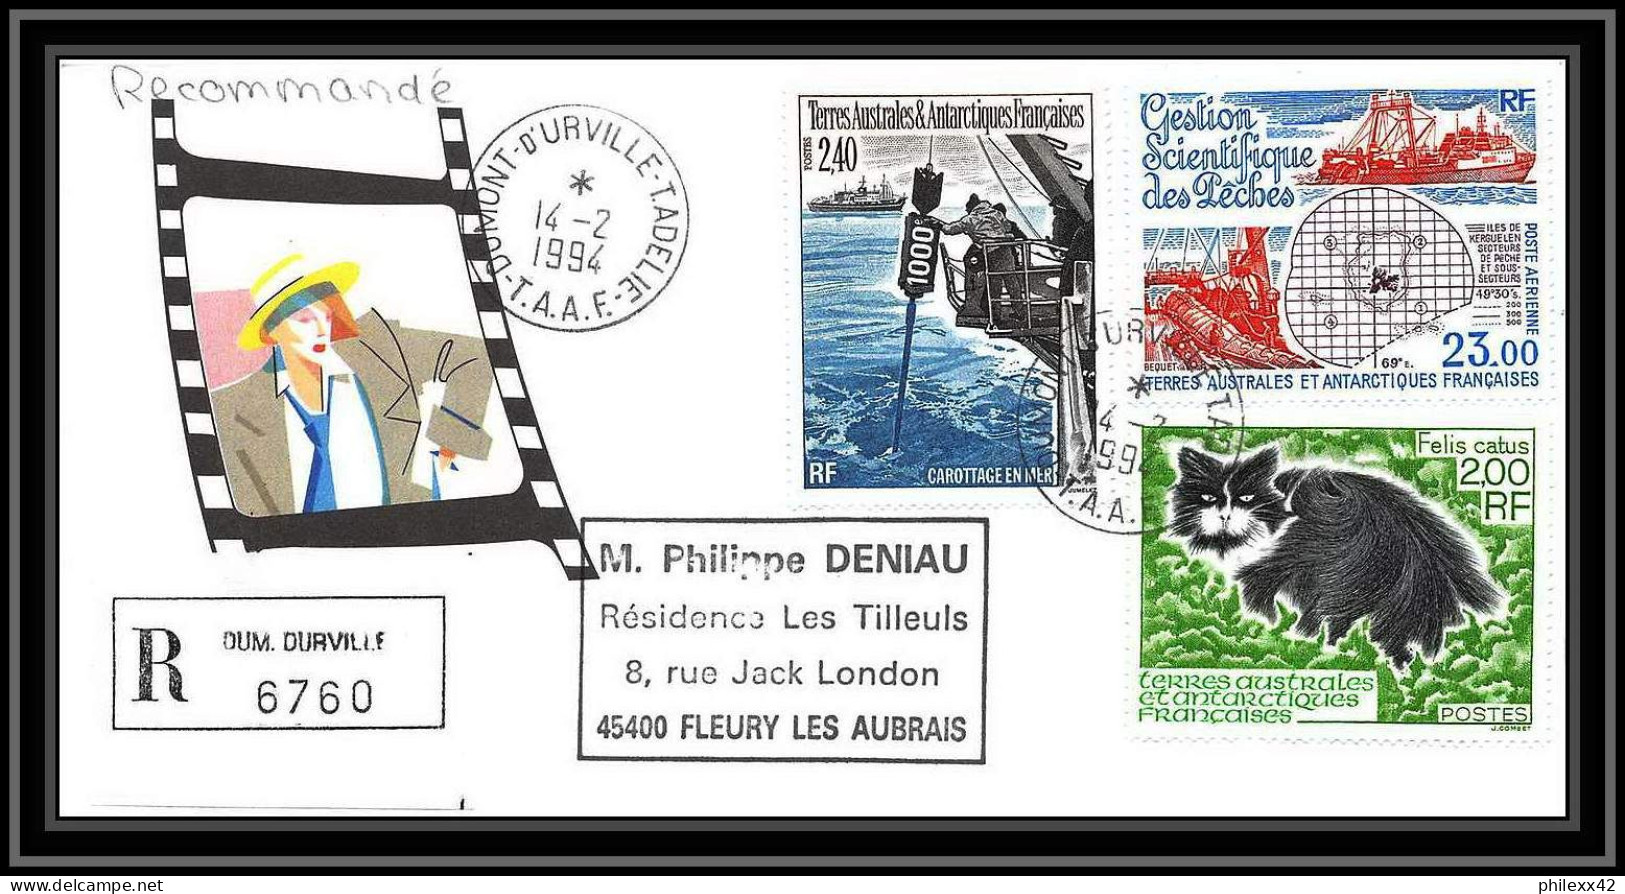 1137 lot de 4 Lettres avec cad différents Taaf terres australes Antarctic covers 6/4/1994 N° 130+186/187 recommandé